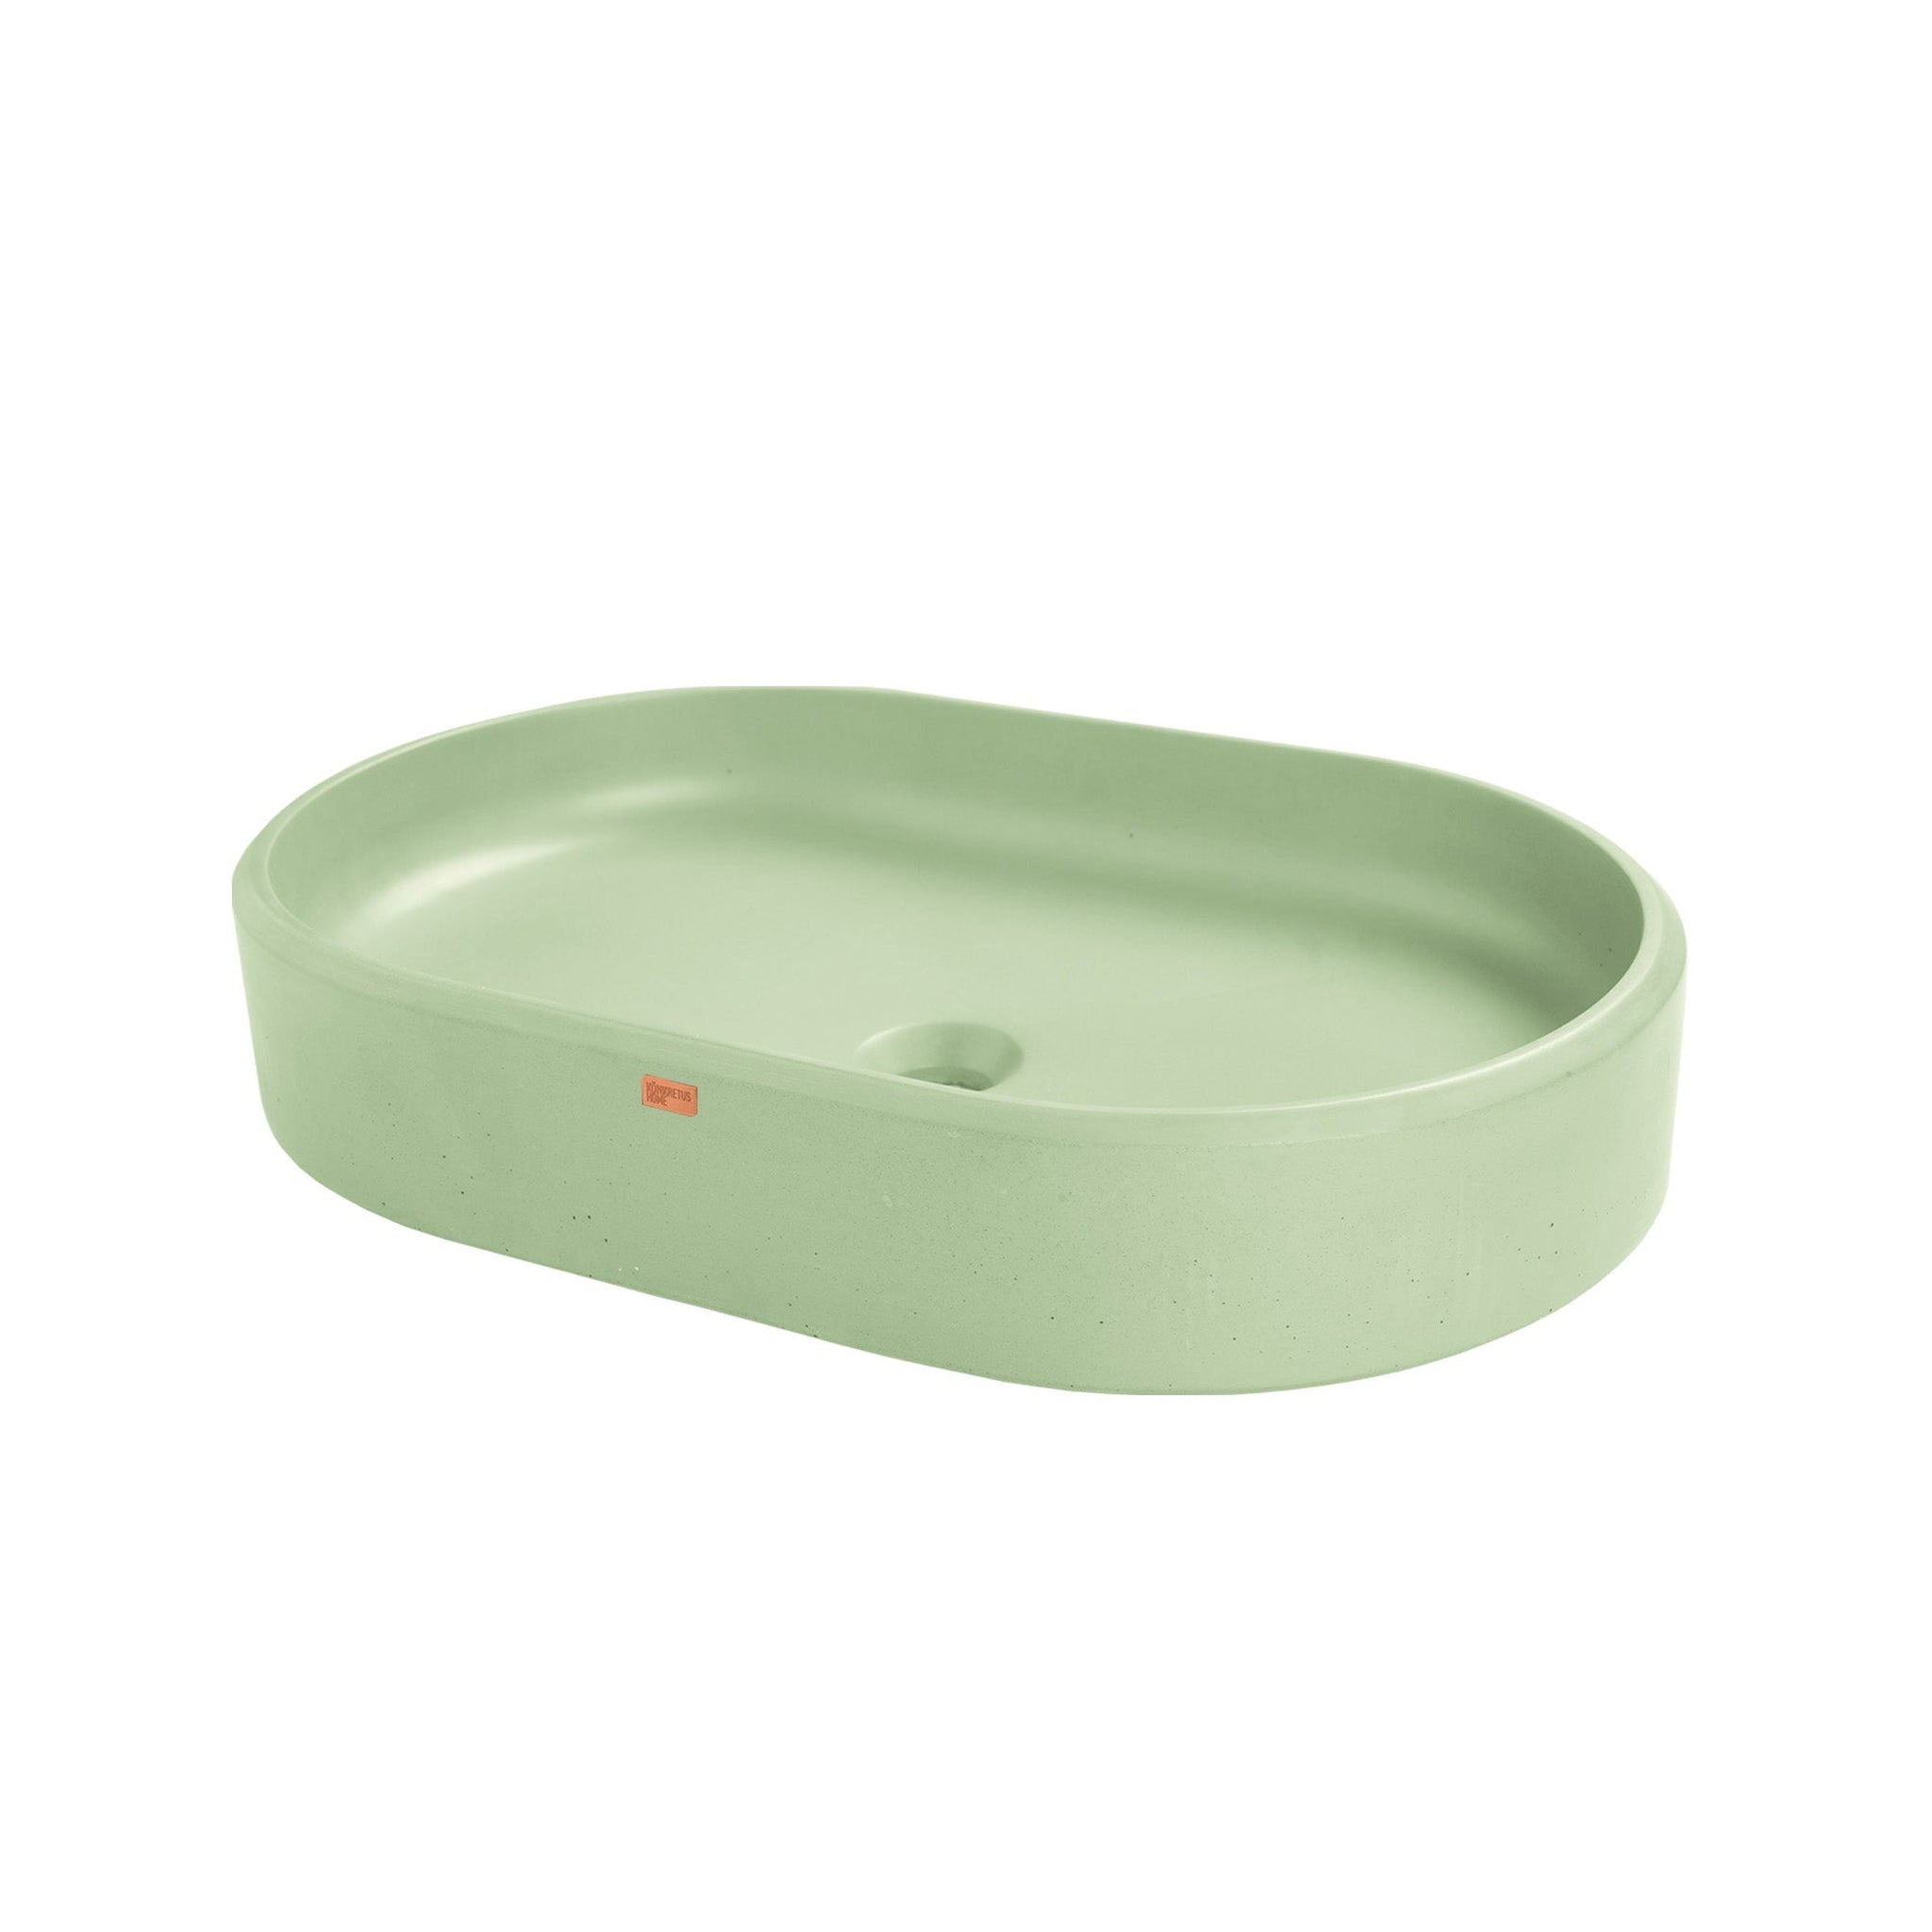 Konkretus, Konkretus Ubud02 22" Ceiba Green Top Mount Oval Vessel Concrete Bathroom Sink